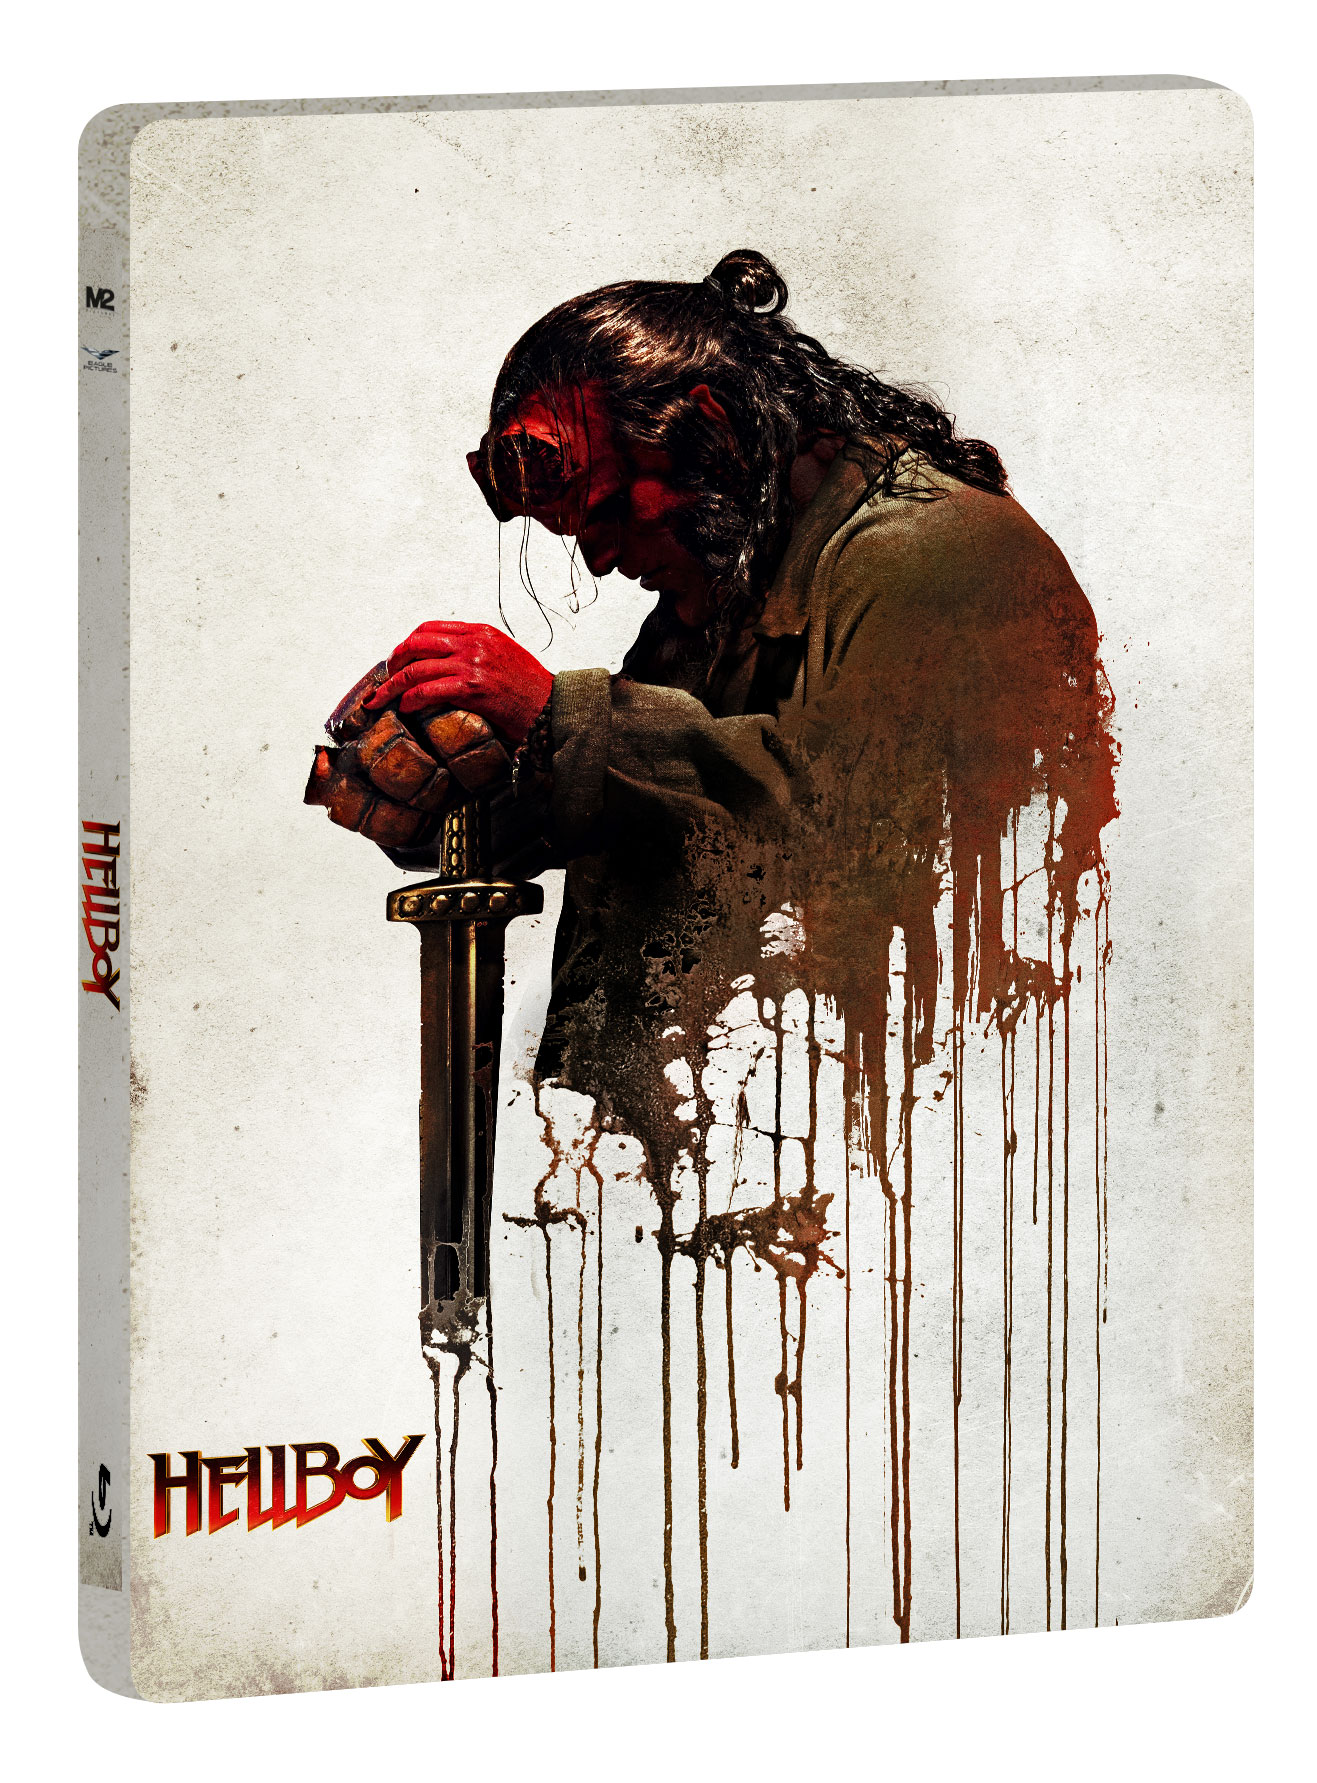 Blu-Ray Hellboy (Ltd Steelbook) (4K Ultra Hd+Blu-Ray+10 Card Da Collezione) NUOVO SIGILLATO, EDIZIONE DEL 19/09/2019 SUBITO DISPONIBILE